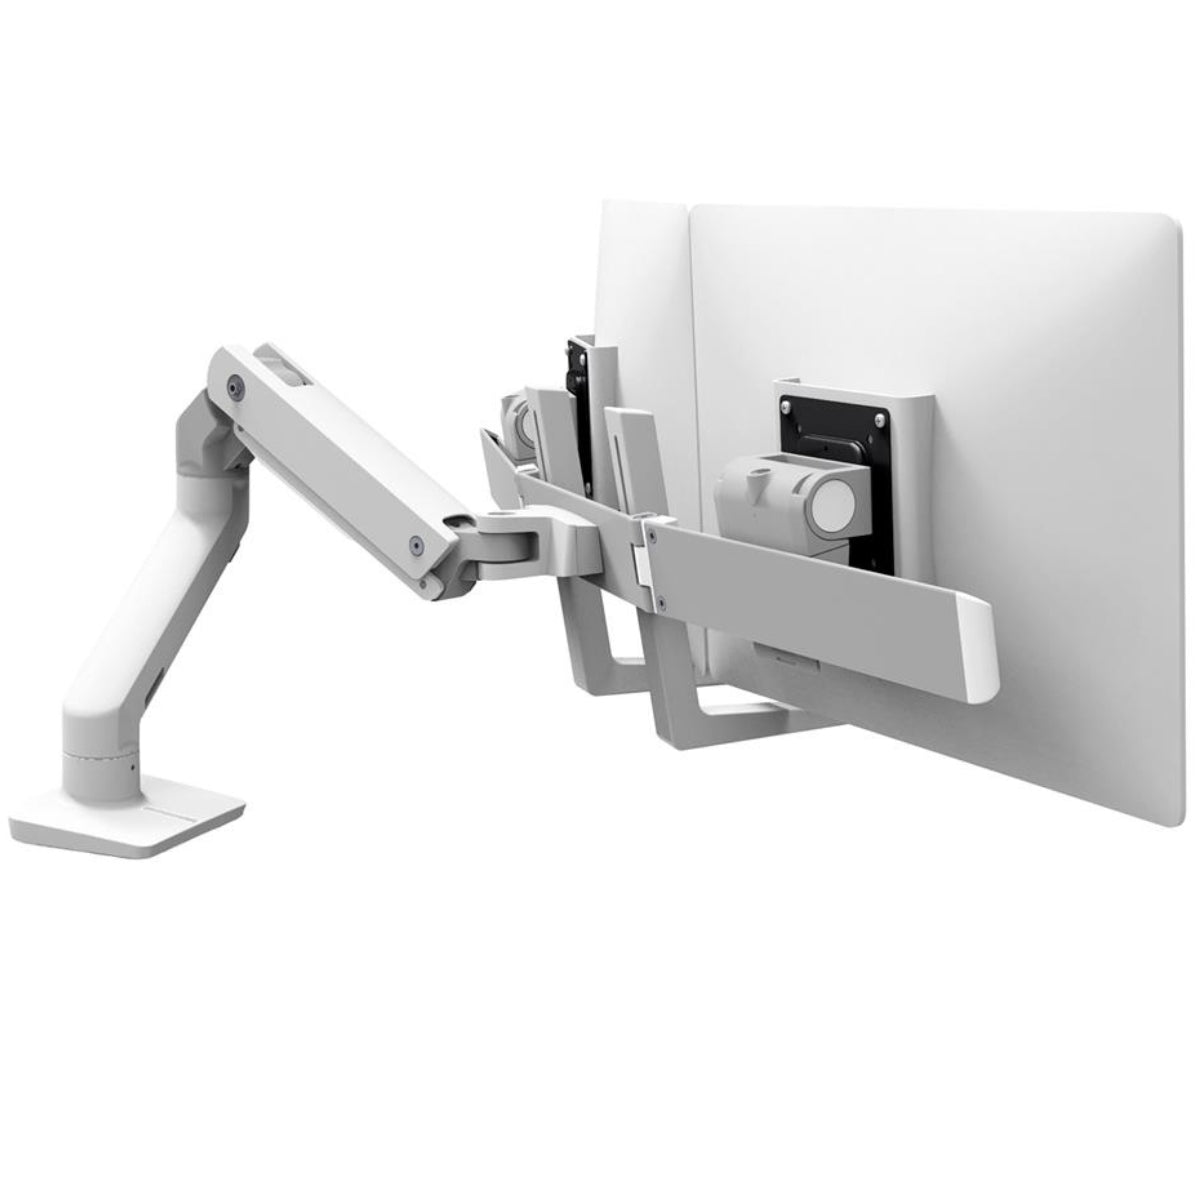 זרוע-לשני-מסכים-גדולים-hx-desk-dual-monitor-ergotron